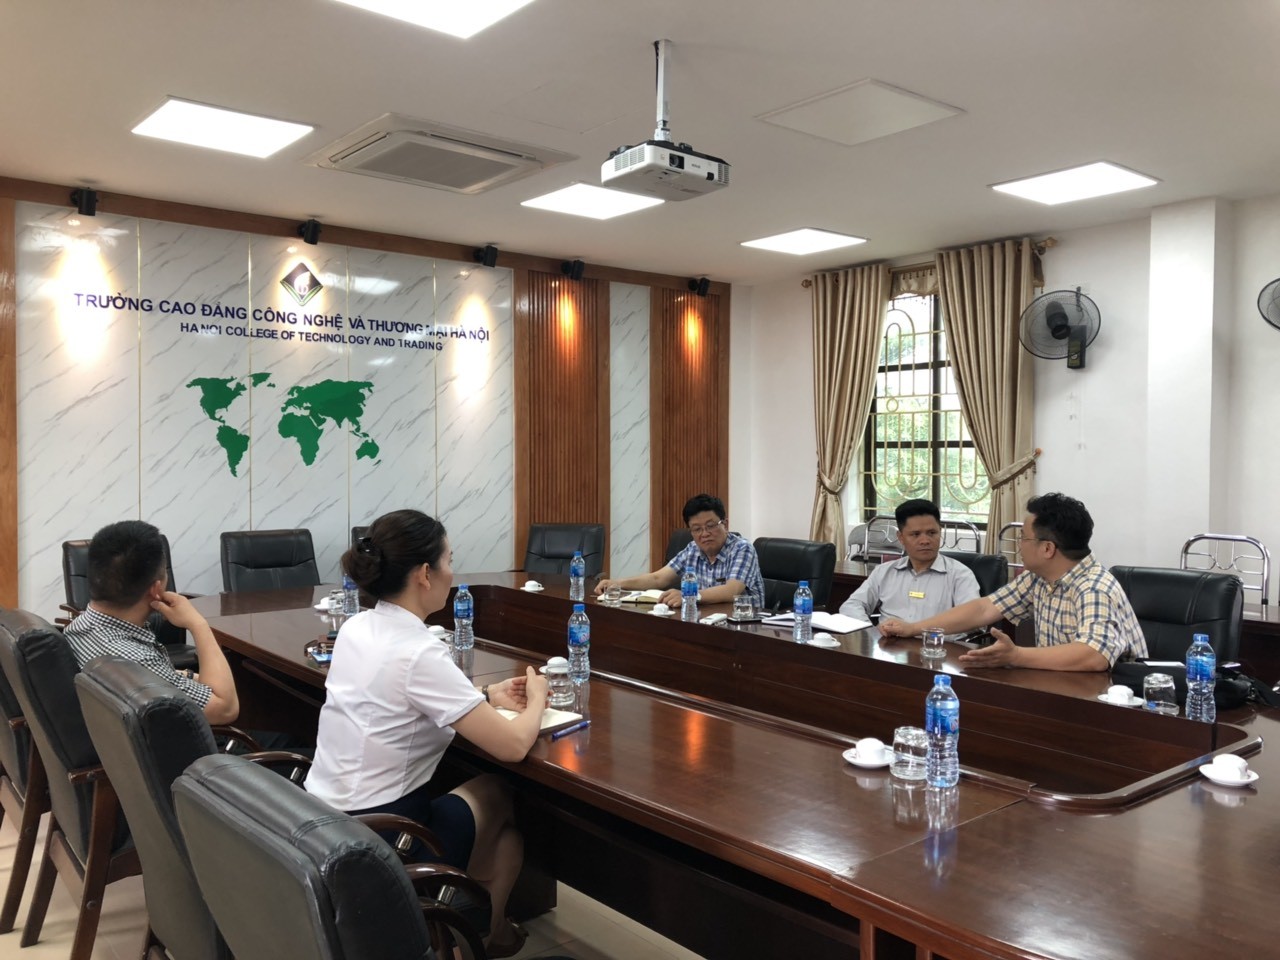 TBuổi làm việc trao đổi về hợp tác giữa Công ty Cổ phần Đạo tạo Huấn luyện Nghiệp vụ Hàng không Việt Nam và Trường Cao đẳng Công nghệ và Thương mại Hà Nội